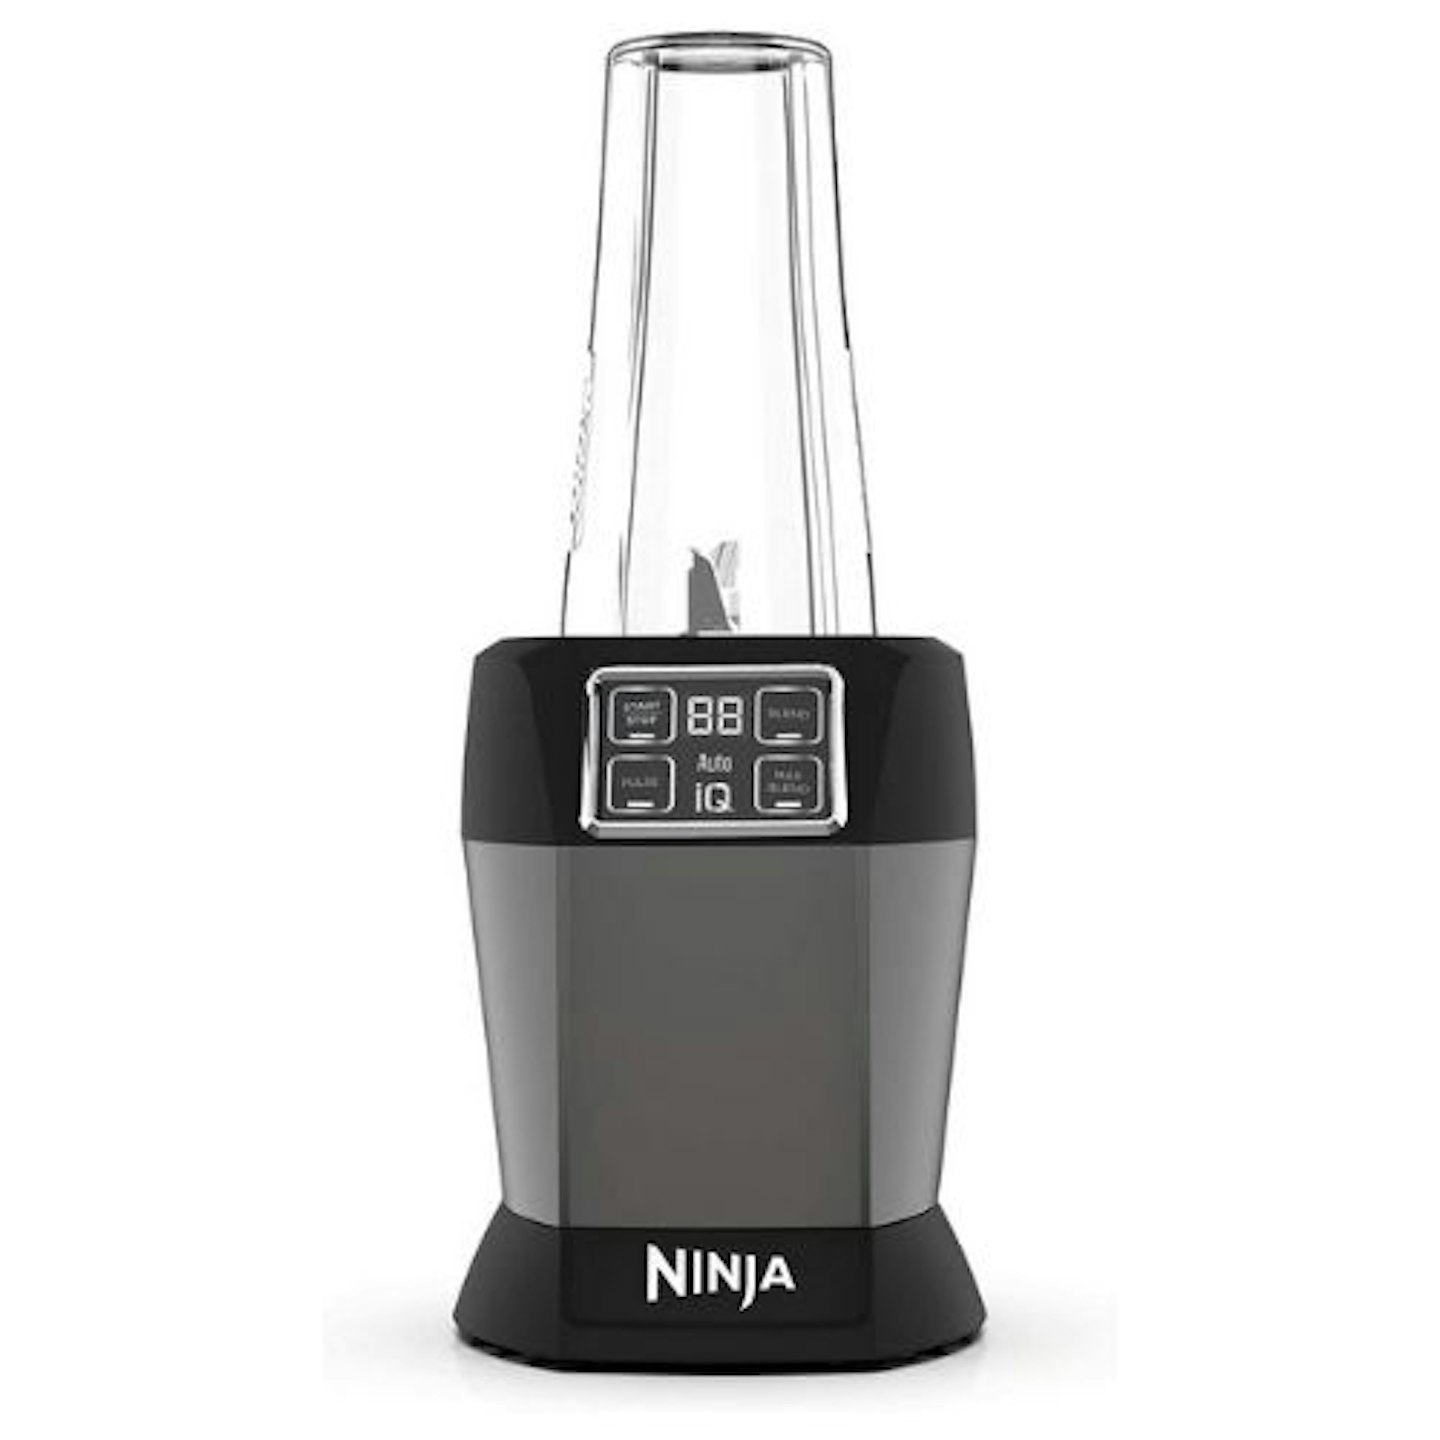 Ninja Blender